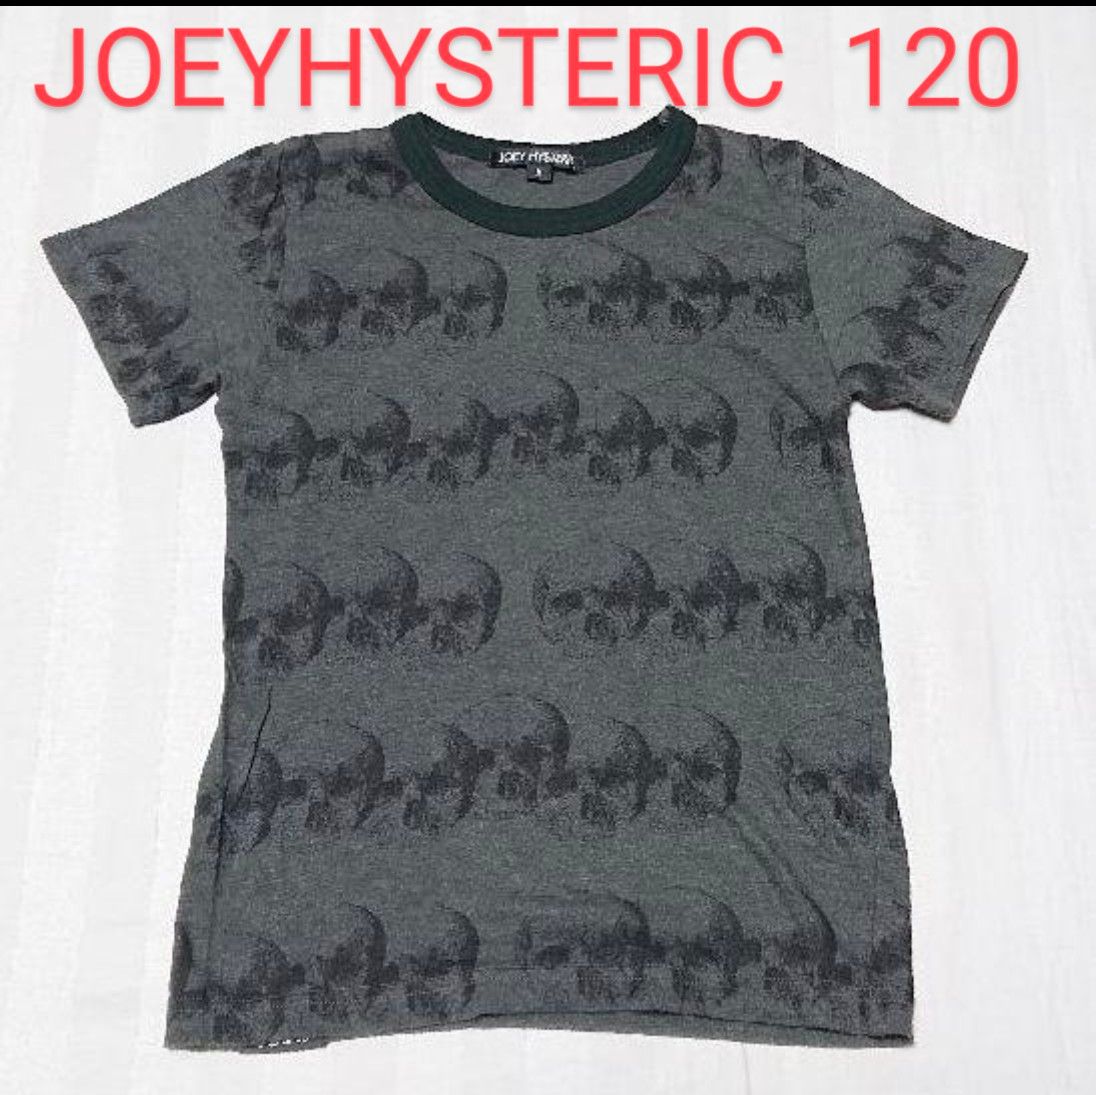 ジョーイヒステリック ドクロ柄Tシャツ/M/120//HYSTERICMINIヒステリックグラマーヒステリックミニ